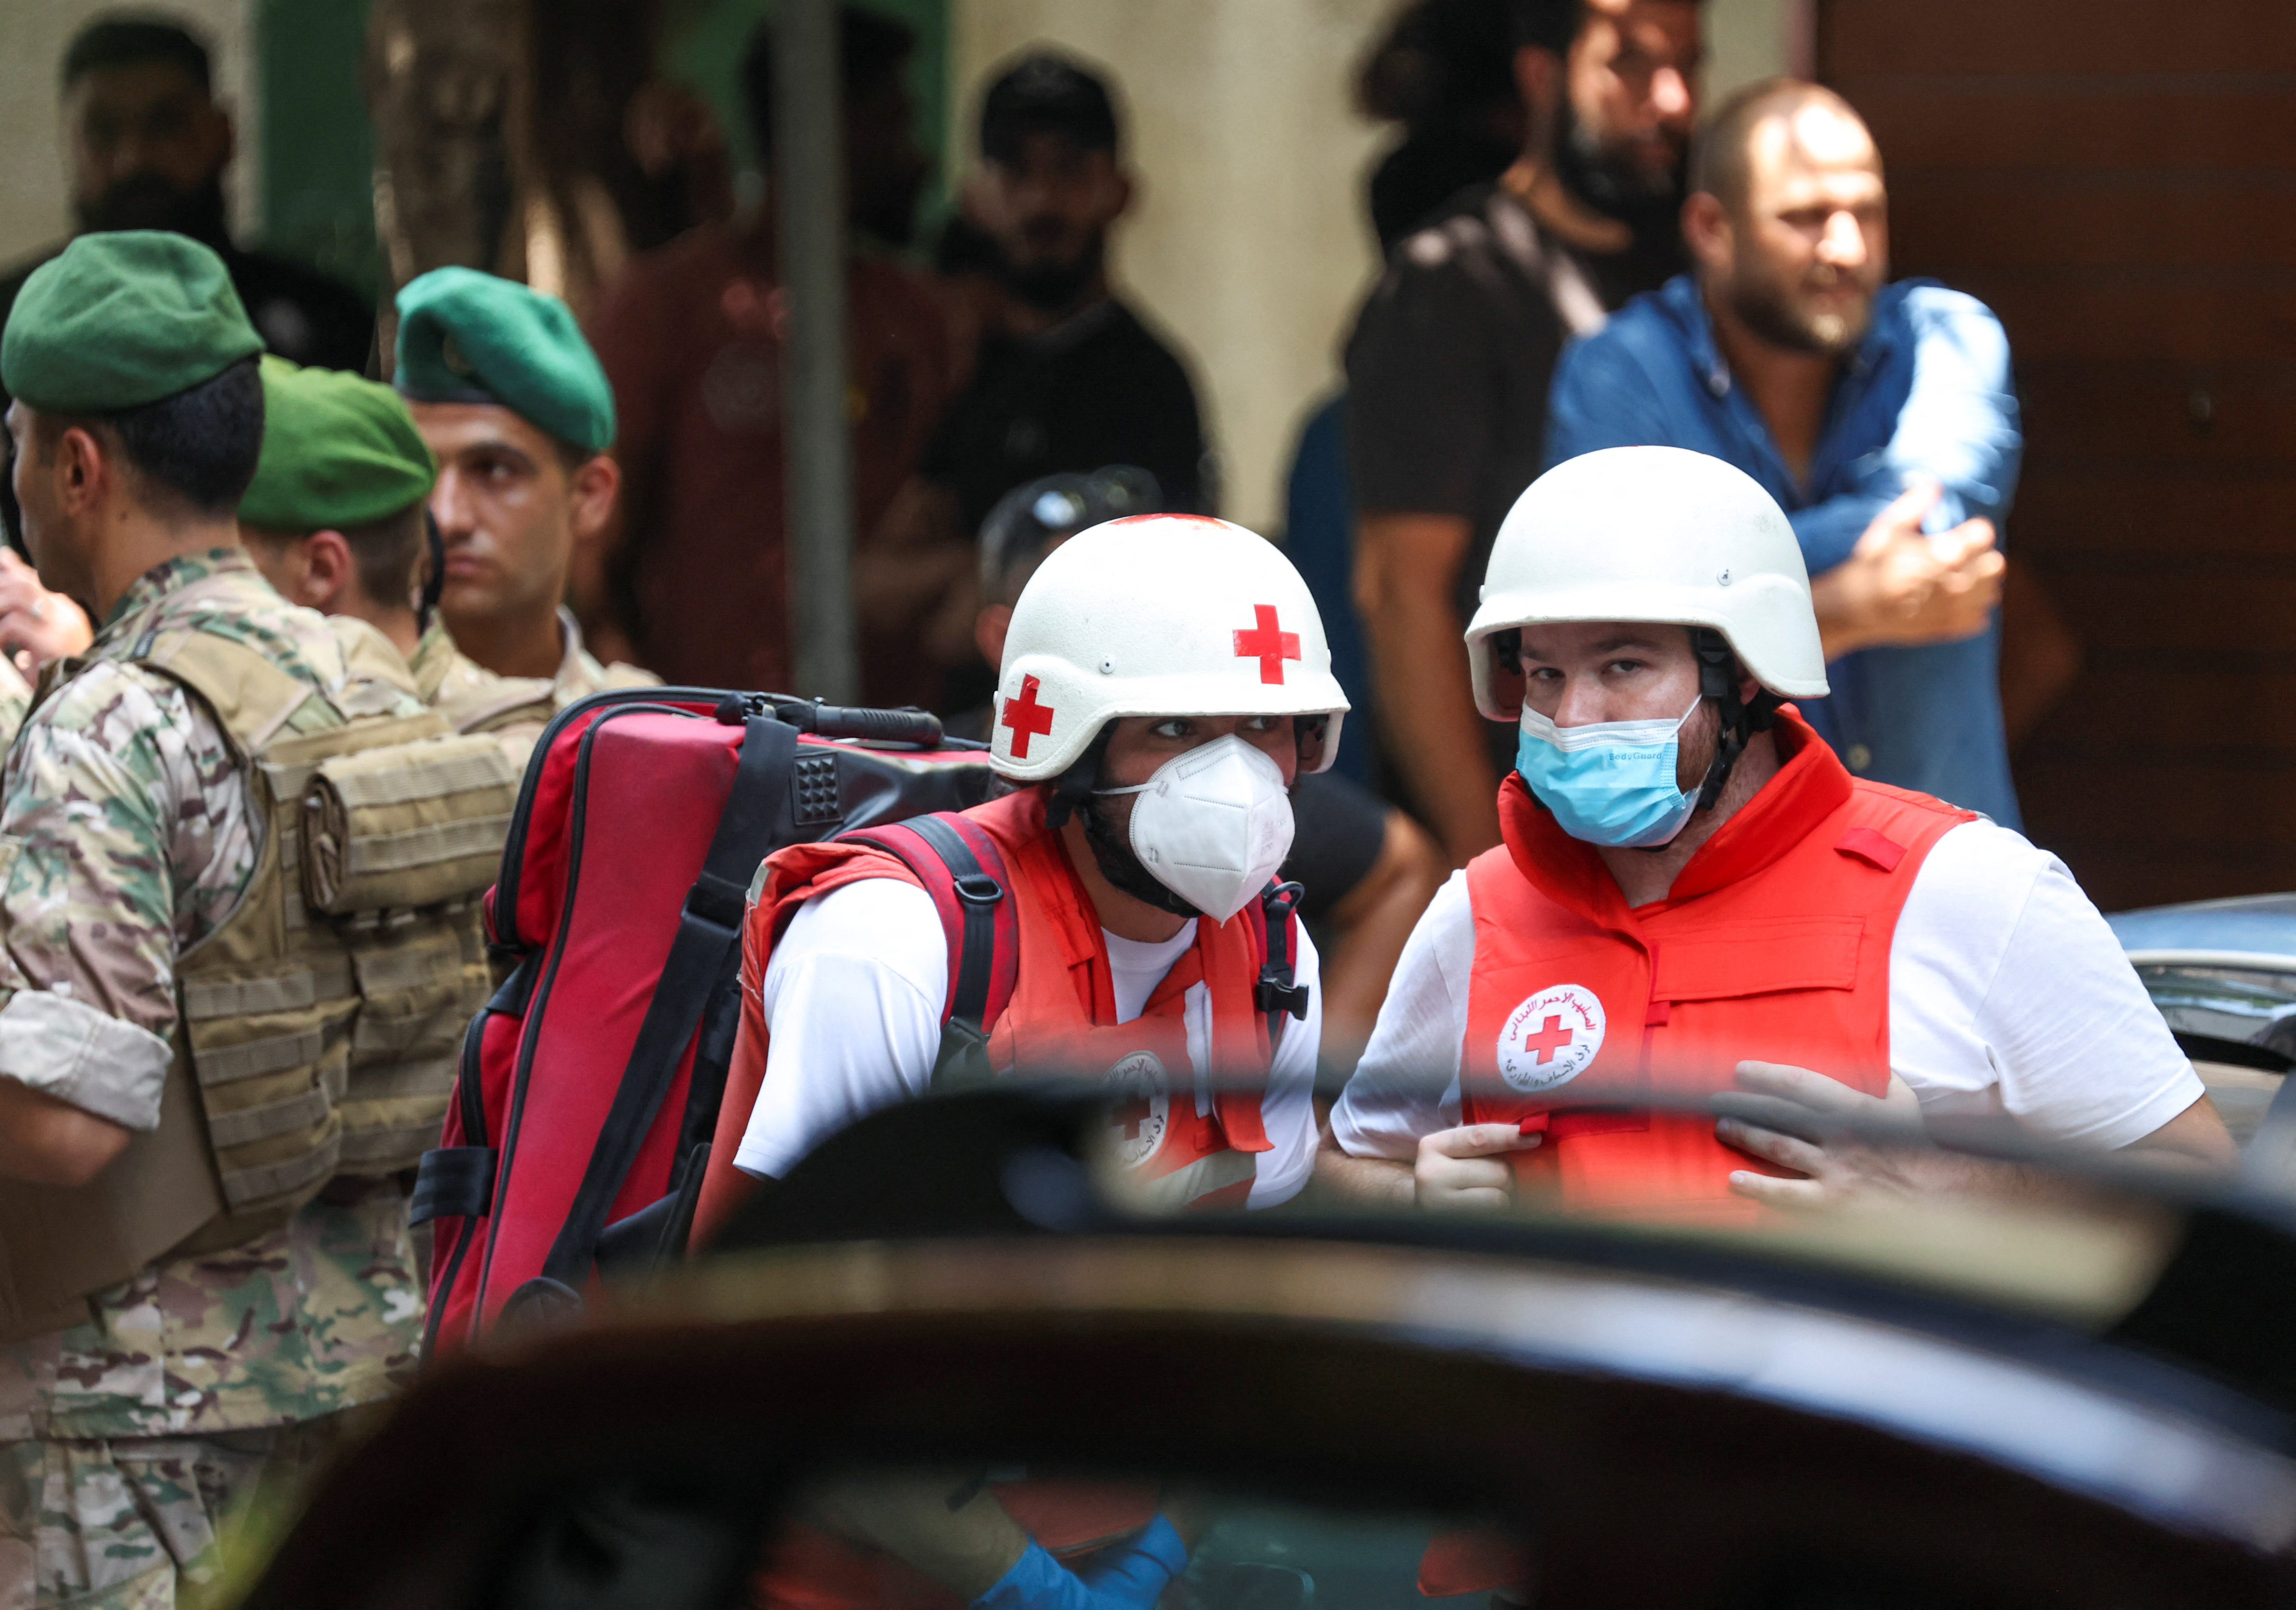 Miembros de la Cruz Roja y emergencias están listos para atender a las personas que libera el ahorrista que mantiene secuestradas a un número indeterminado de personas (REUTERS/Mohamed Azakir)